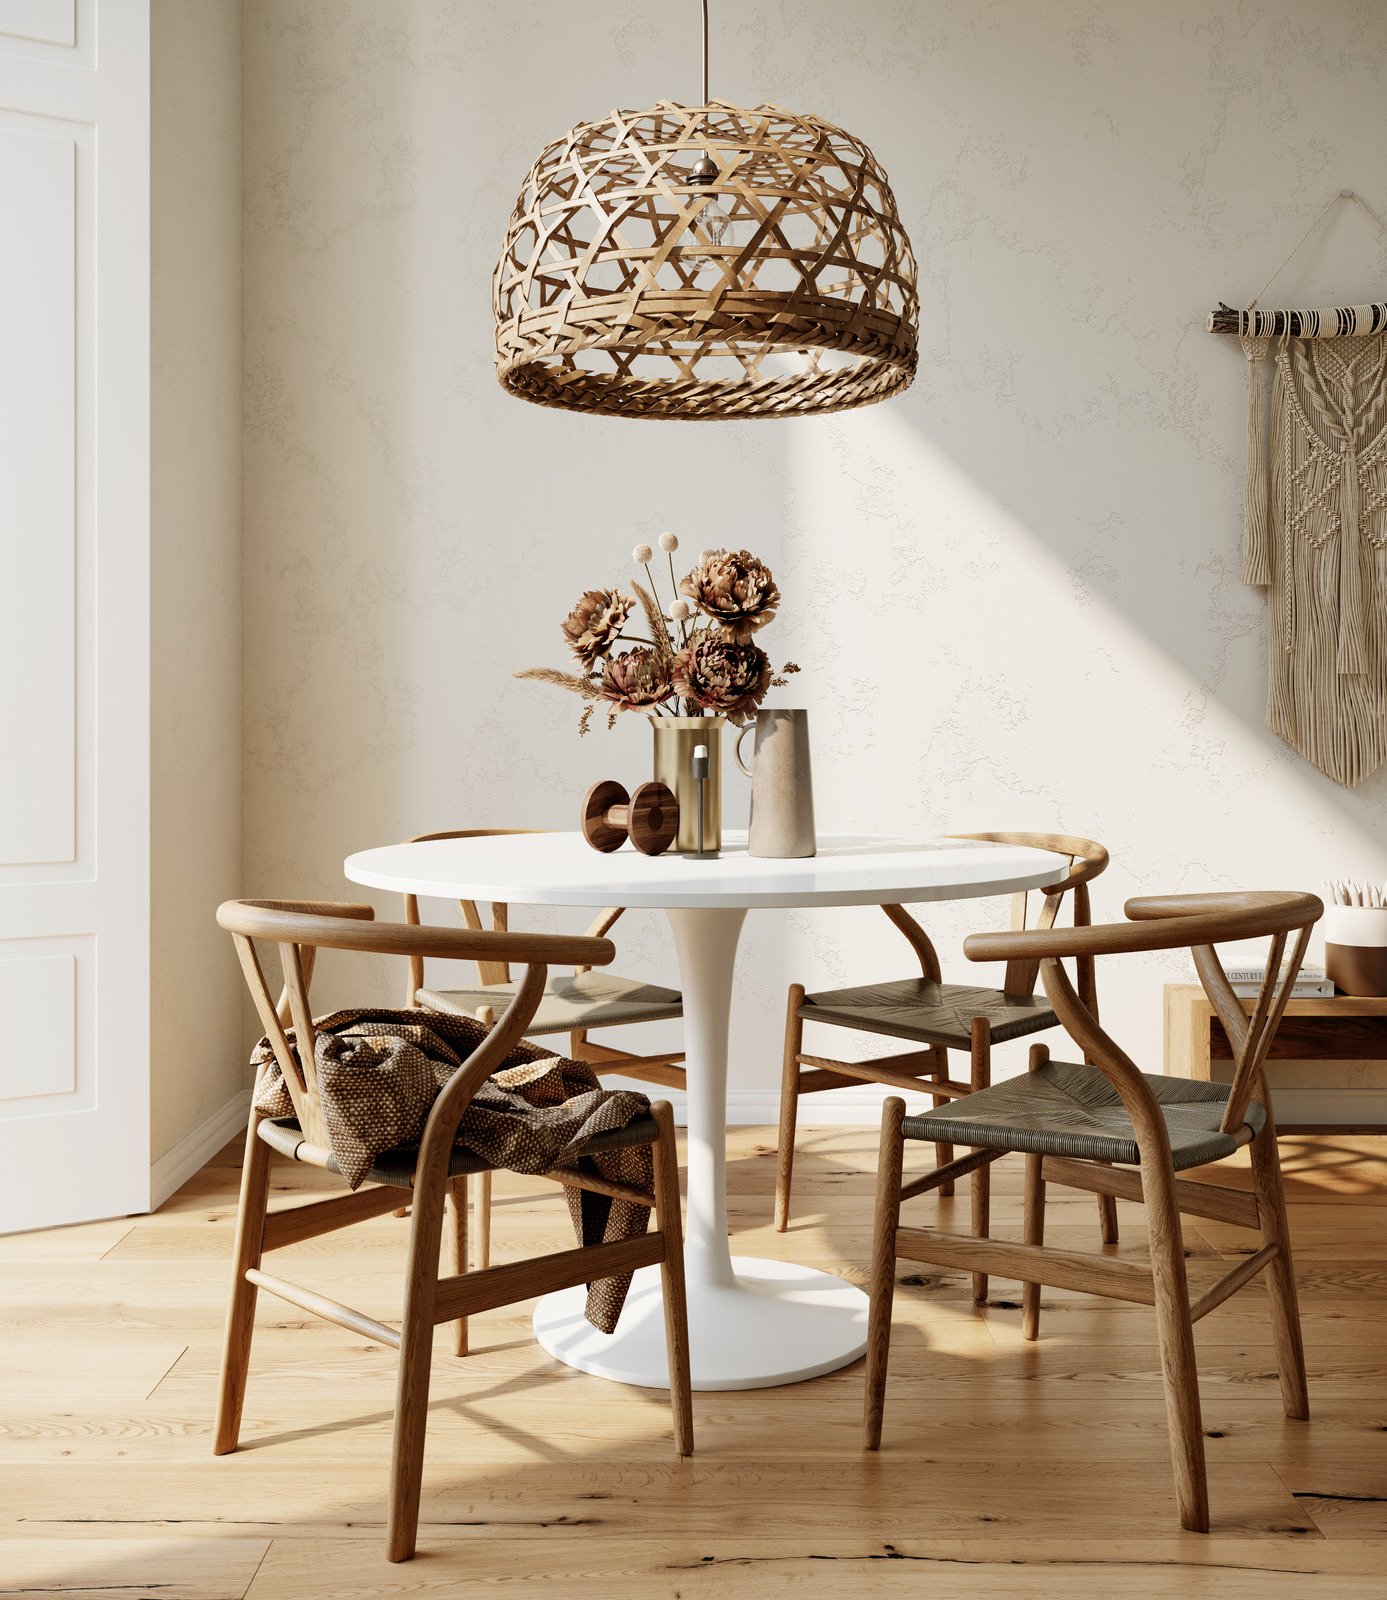 drewniane krzesła, biały stół, drewniana podłoga, pleciona lampa